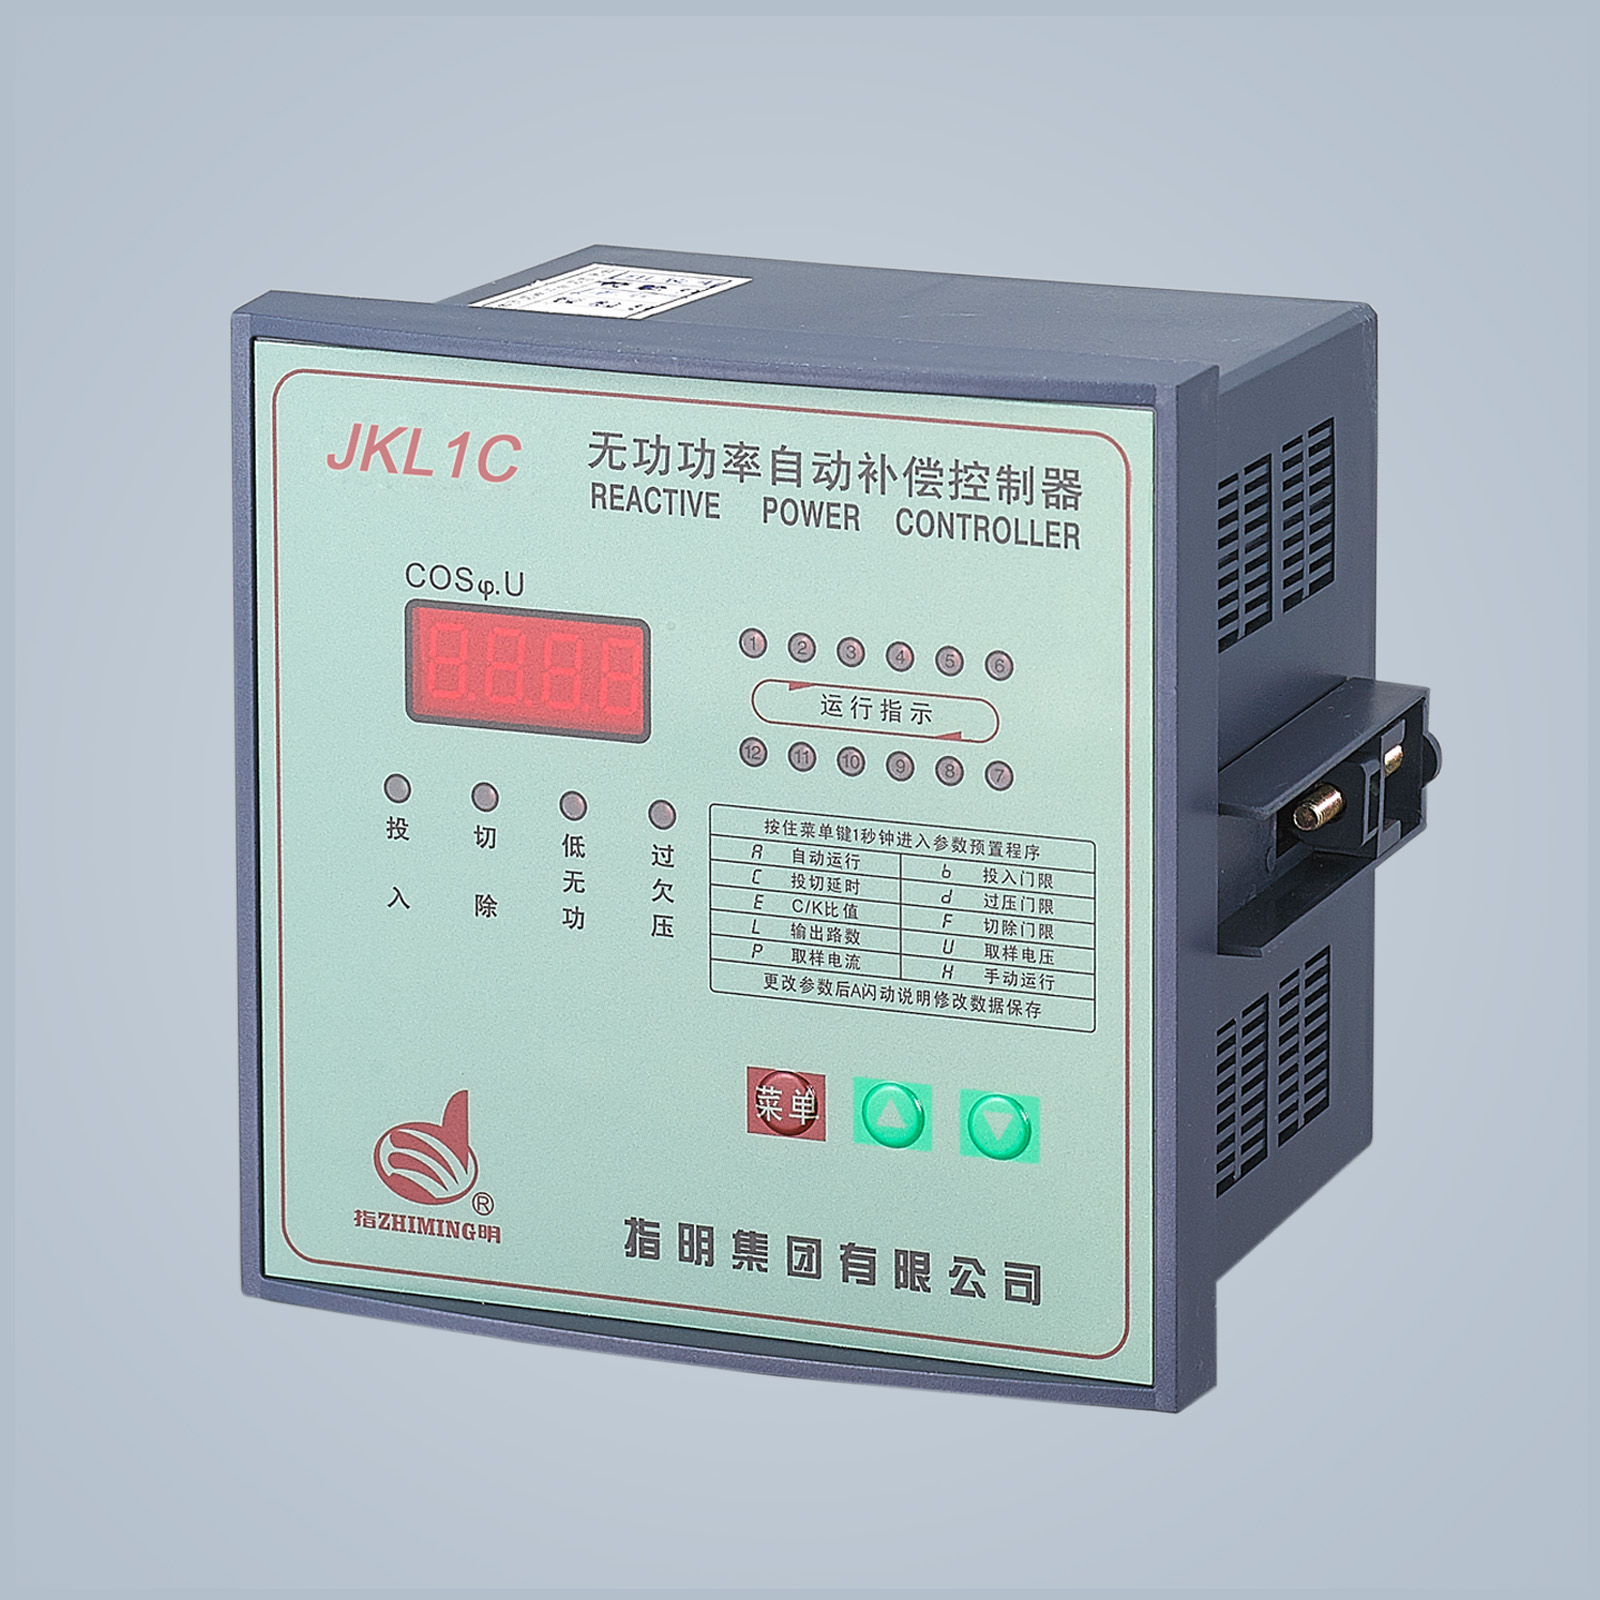 JKL1C  Series Reactive power auto-compen sation controller 660V